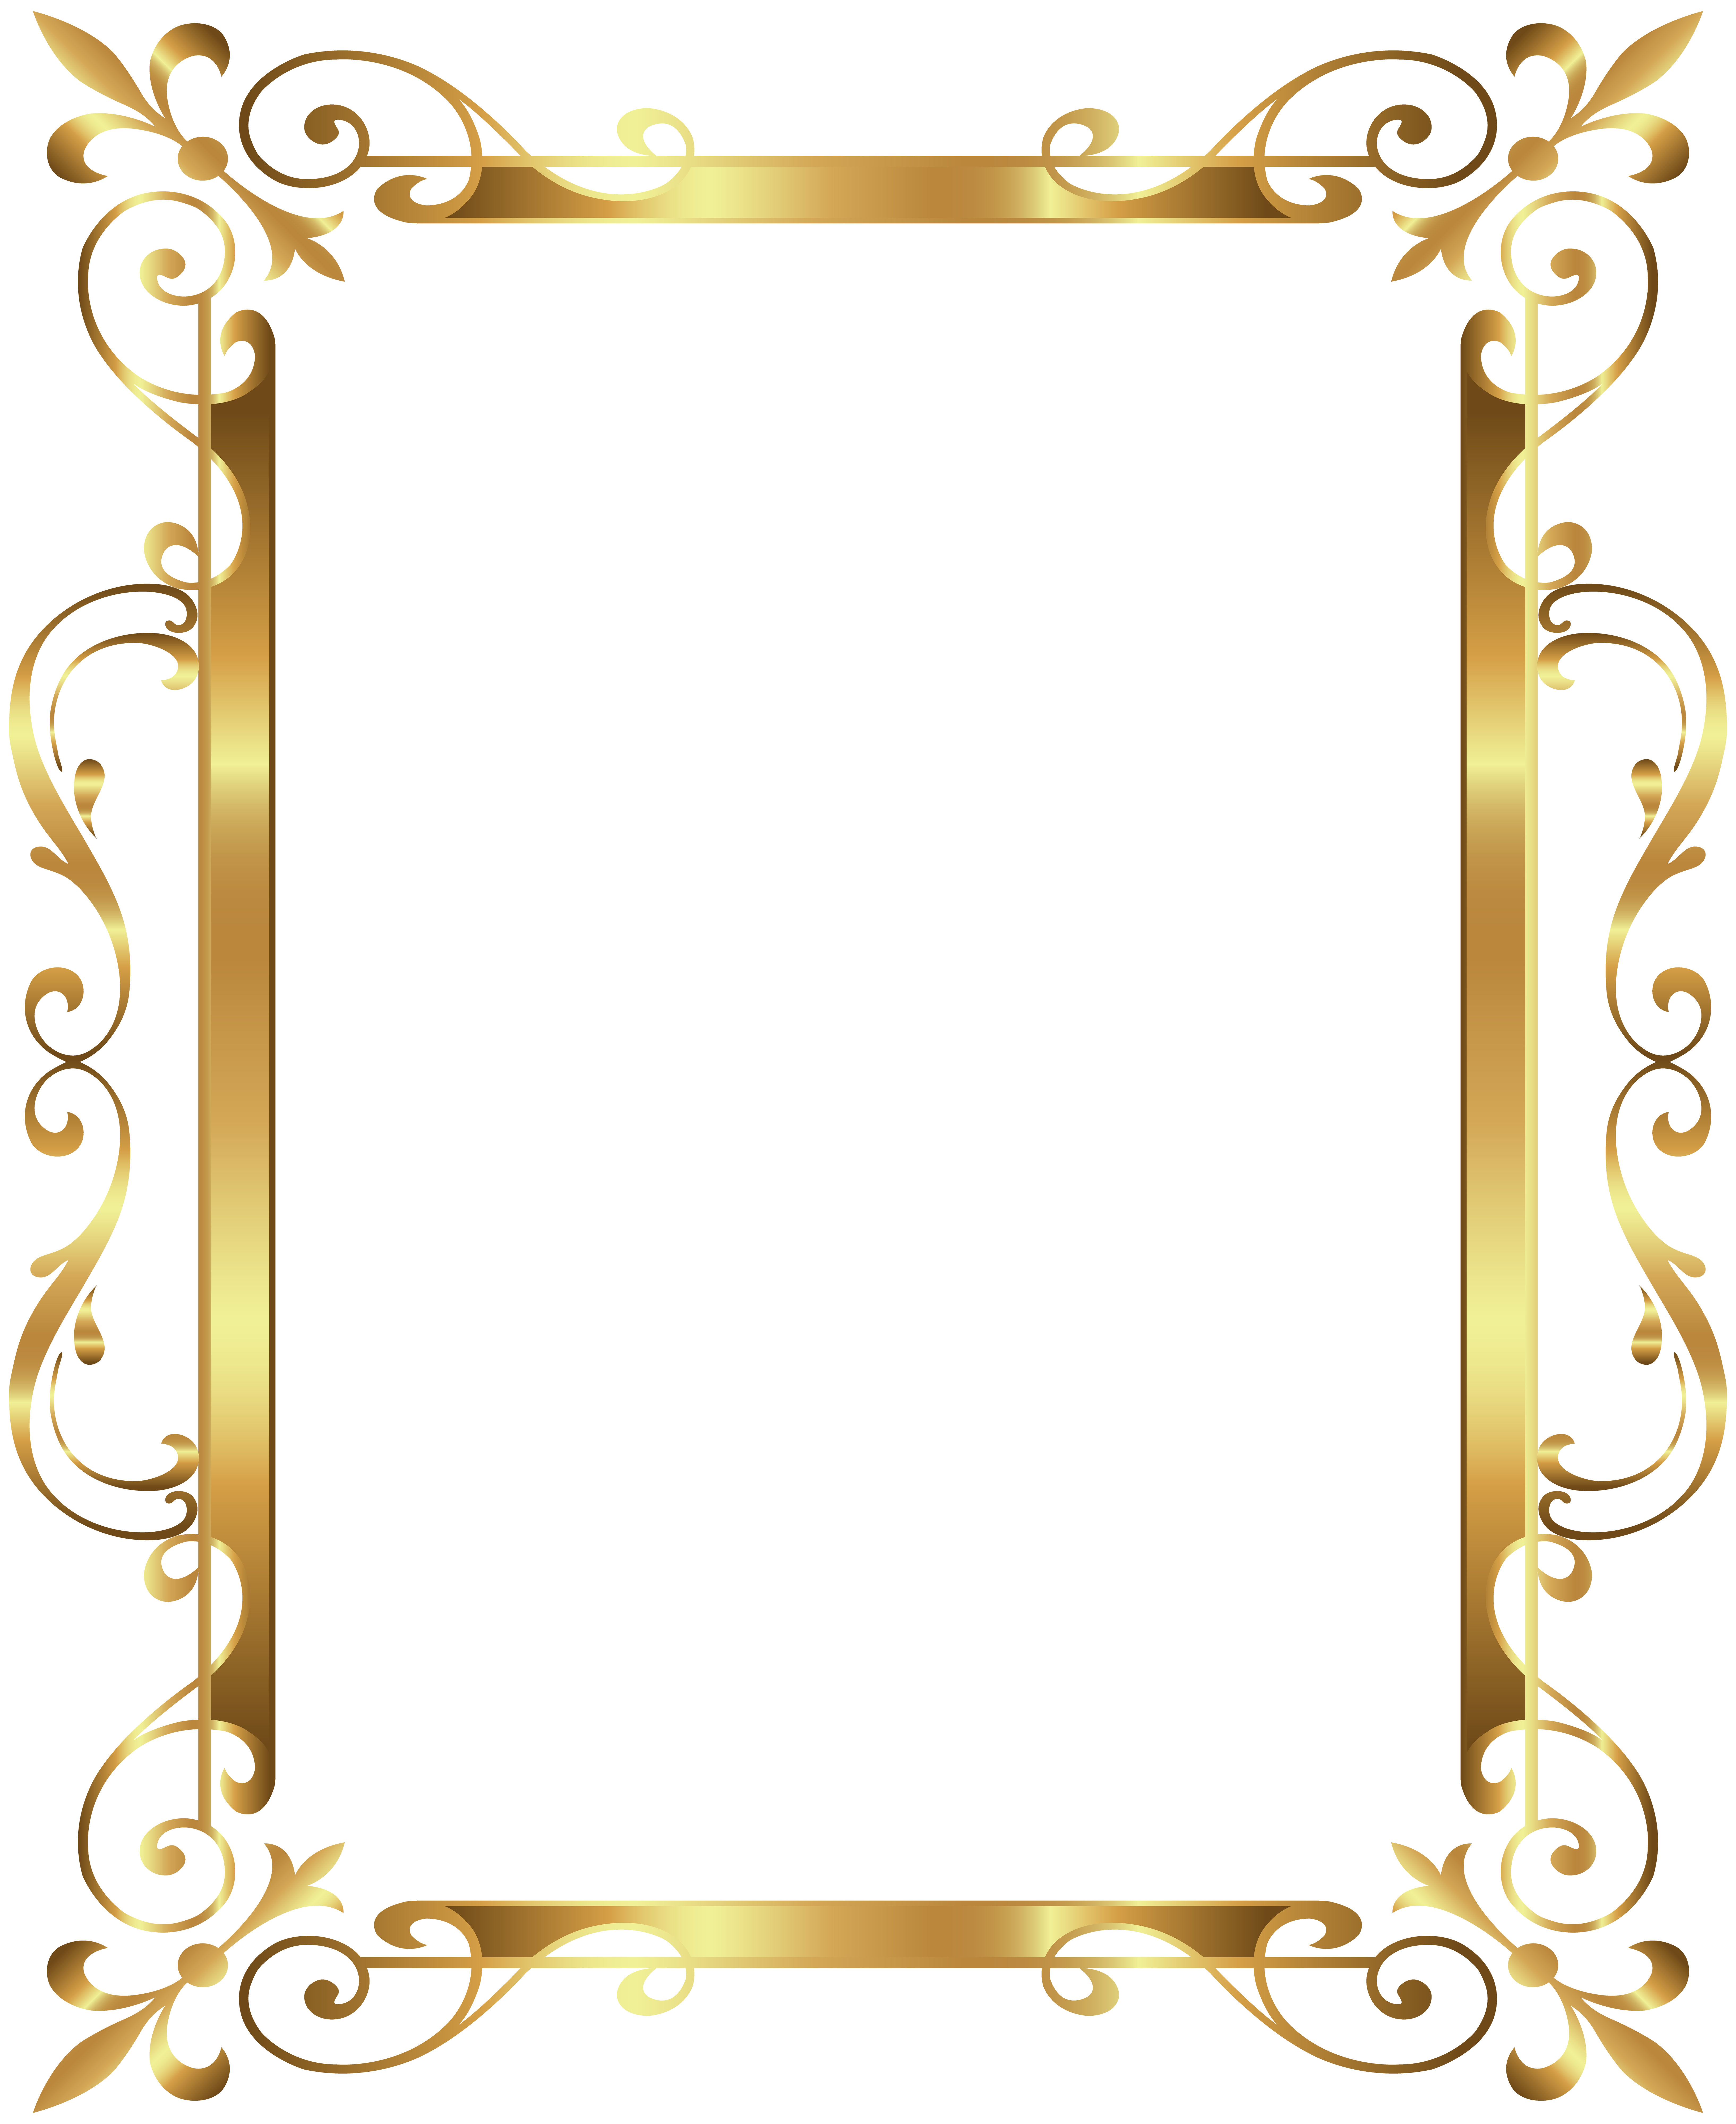 Gold Frame Clip Art Gold Border Frame Deco Transparent Clip Art Image